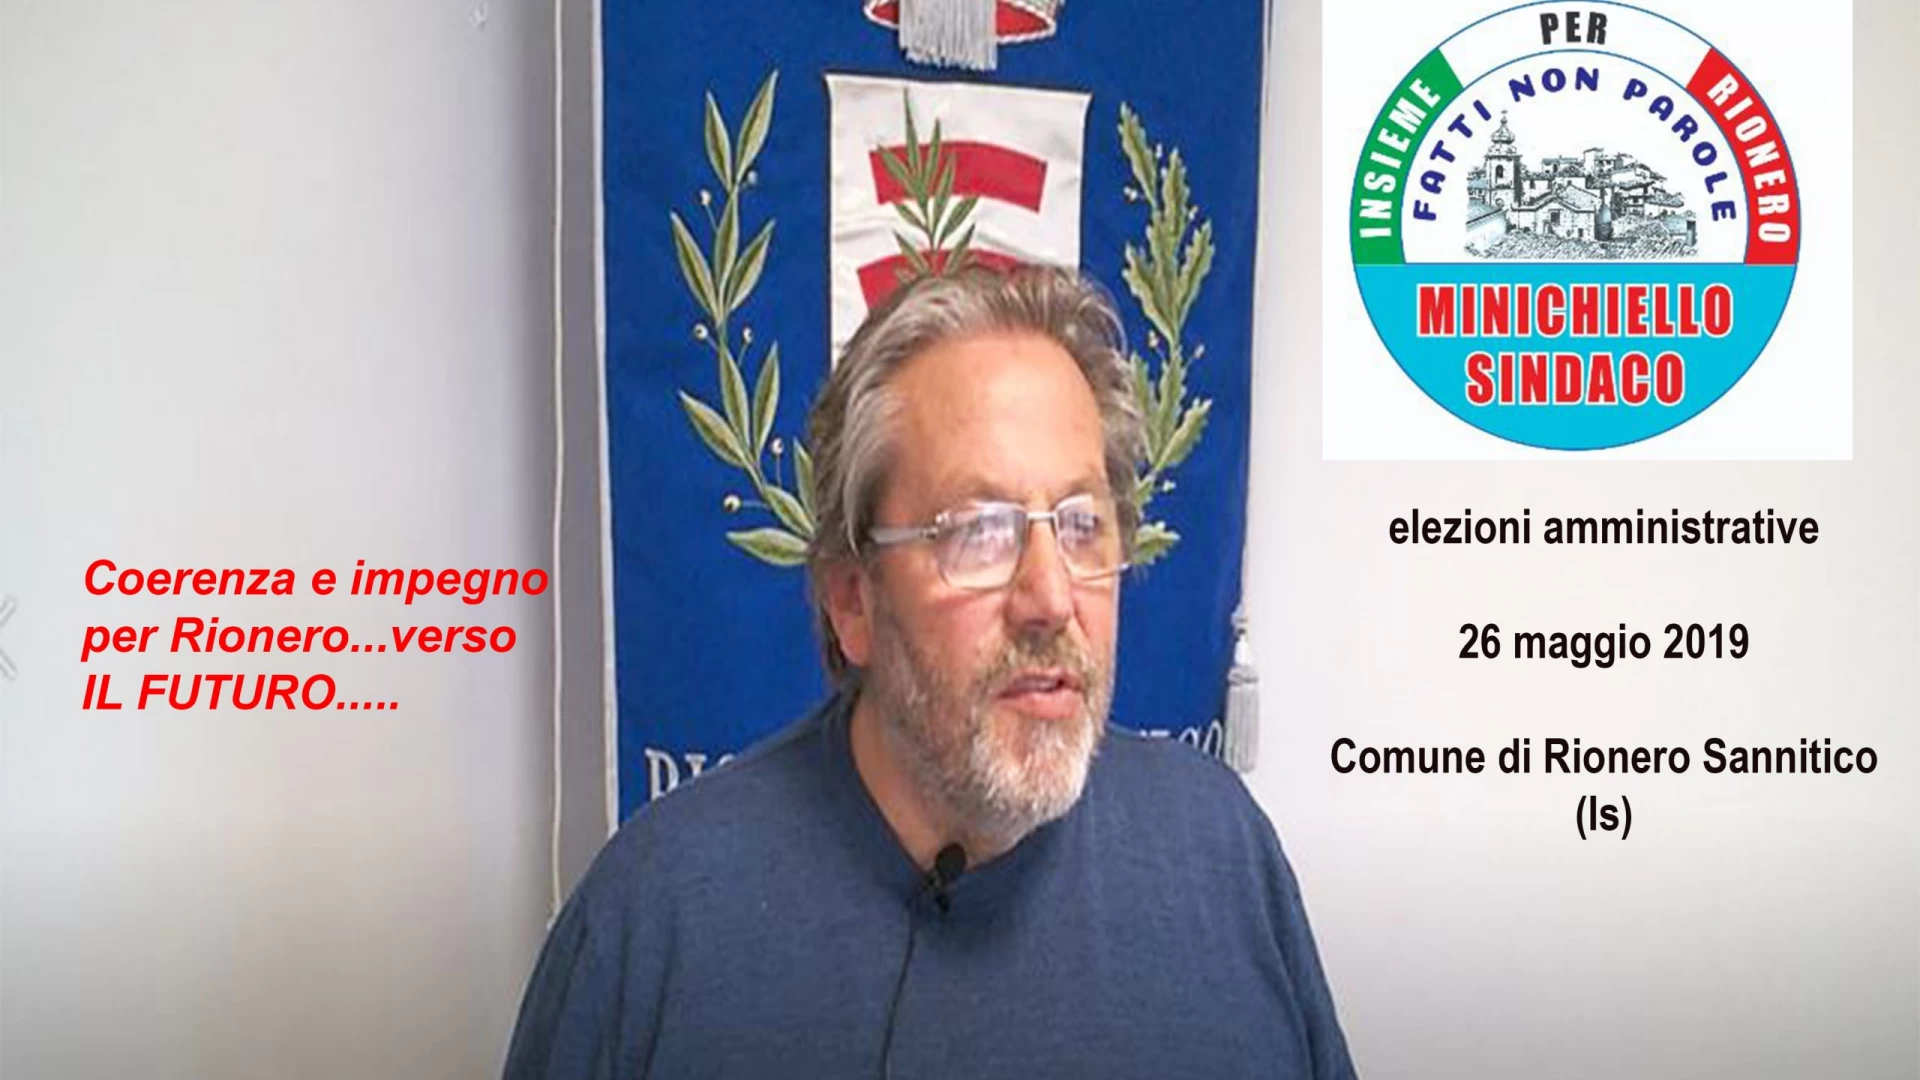 Rionero Sannitico: “23Milioni di euro spesi e programmati per il nostro comune. Così cambiamo il territorio”. Tonino Minichiello pensa alle prossime opere.